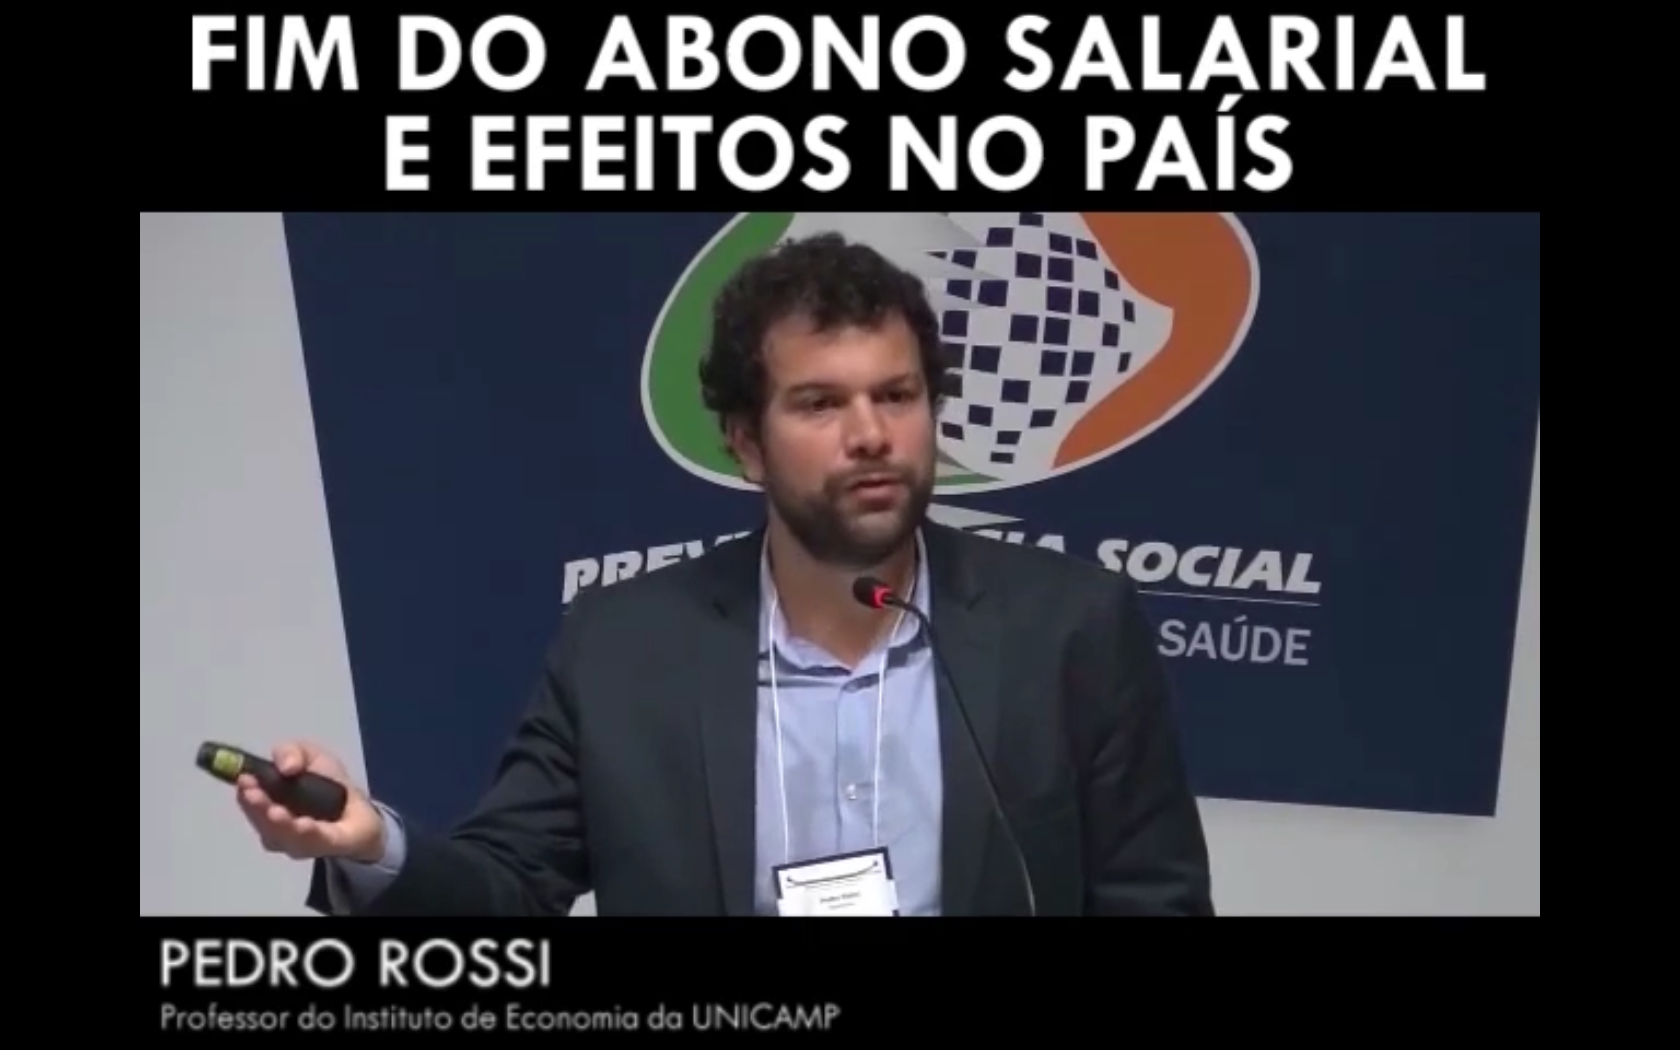 Fim do abono salarial e efeitos no país - Pedro Rossi